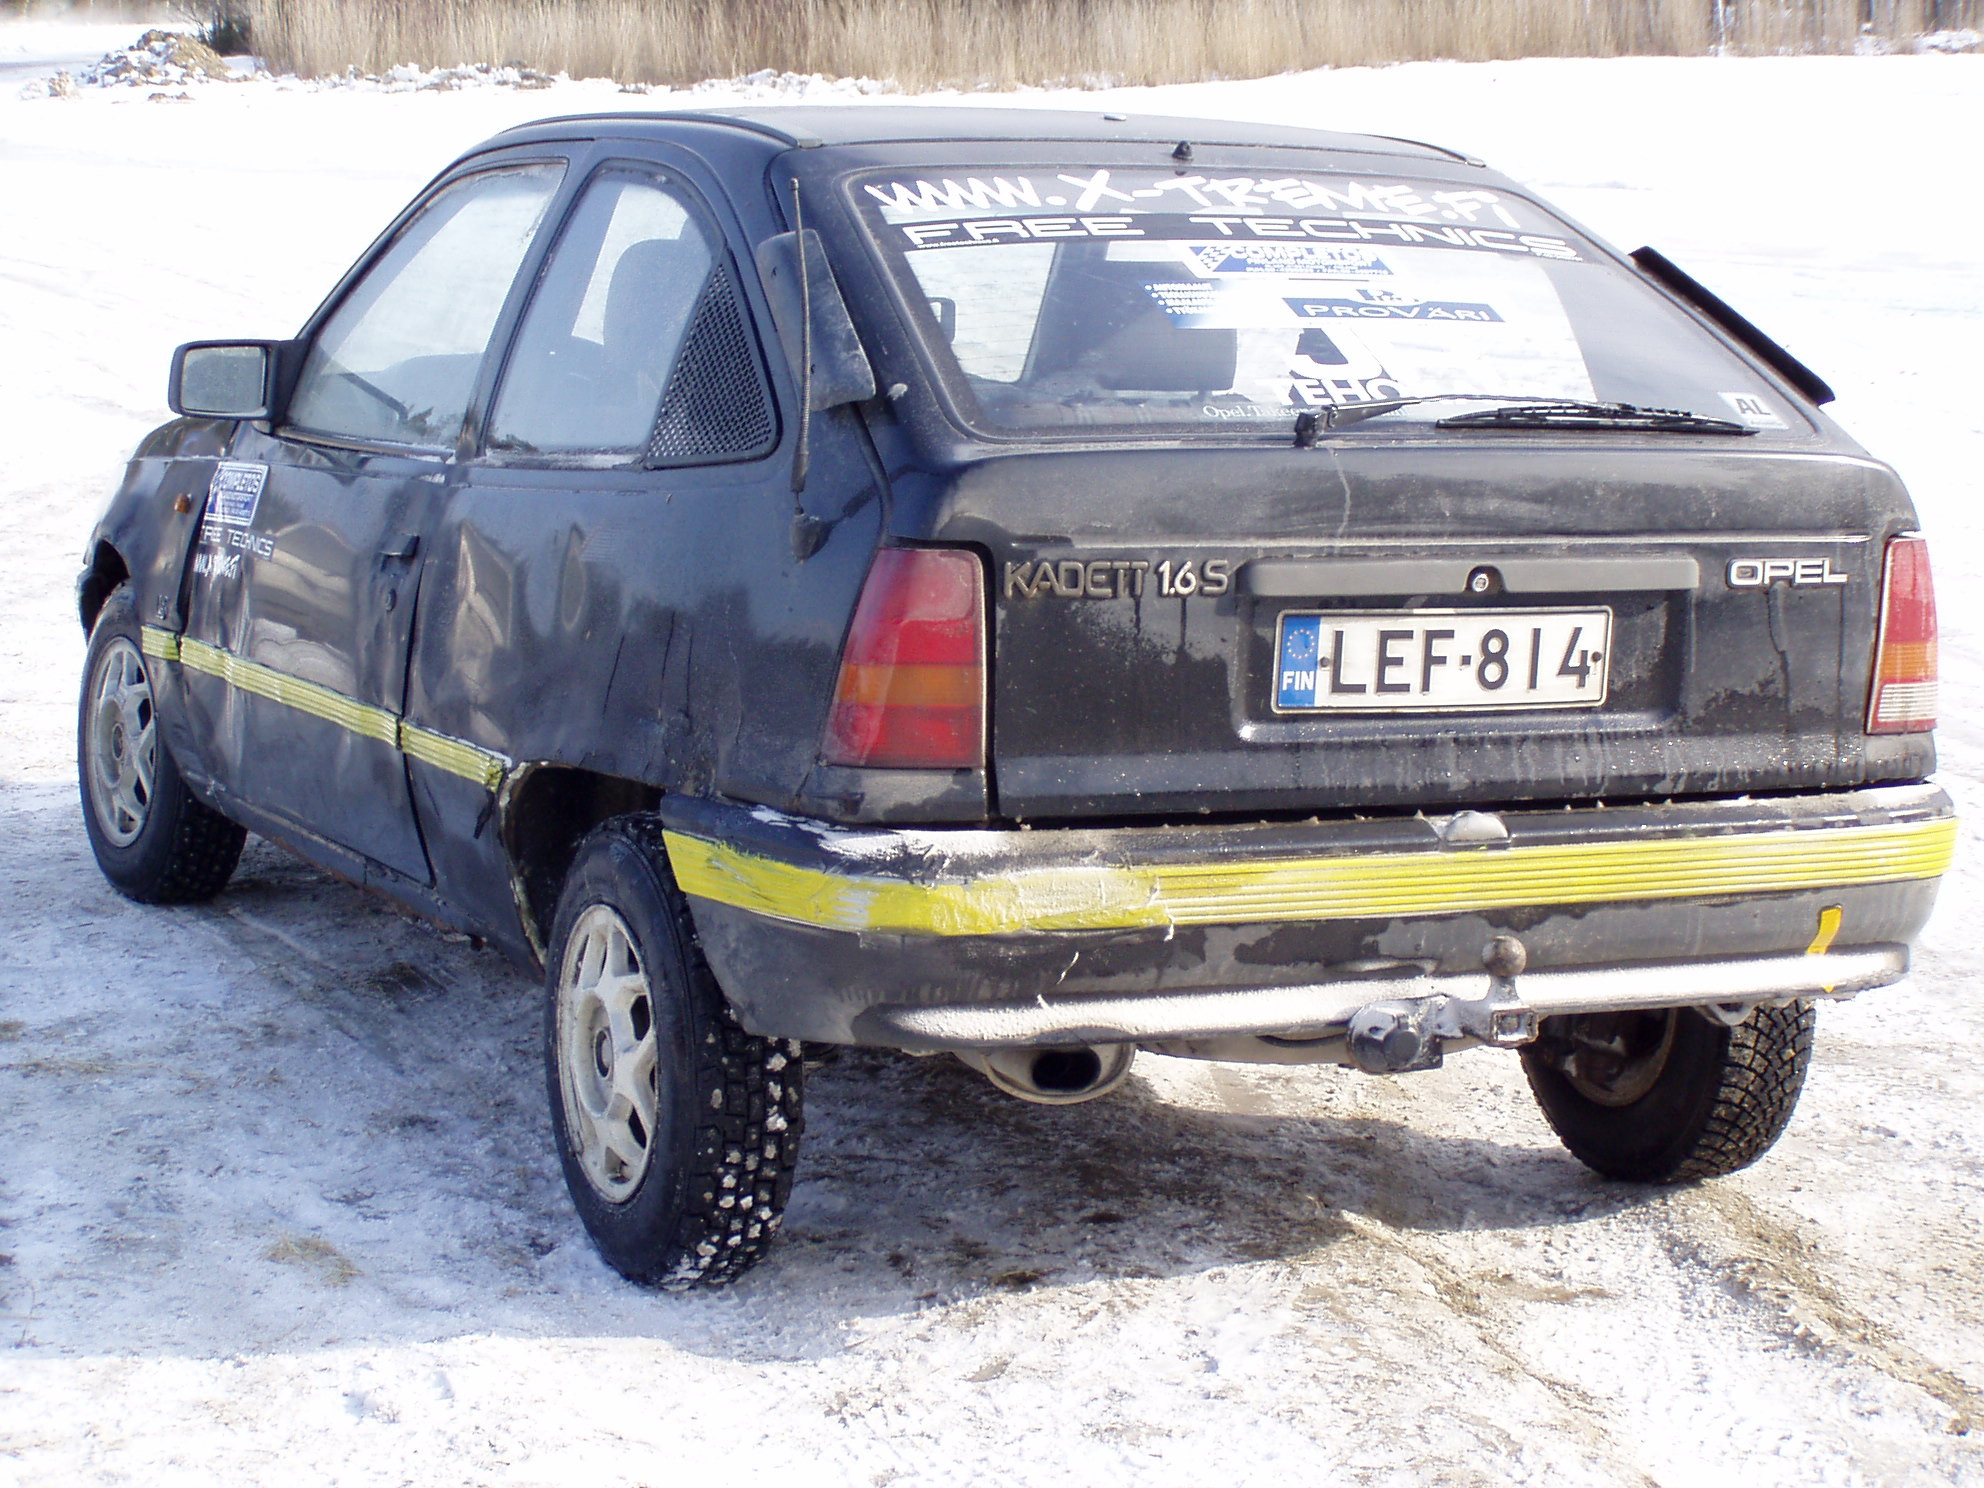 X-Treme talviajot 12.3.2005, Opel Kadett 1.6S jÃ¤Ã¤rata